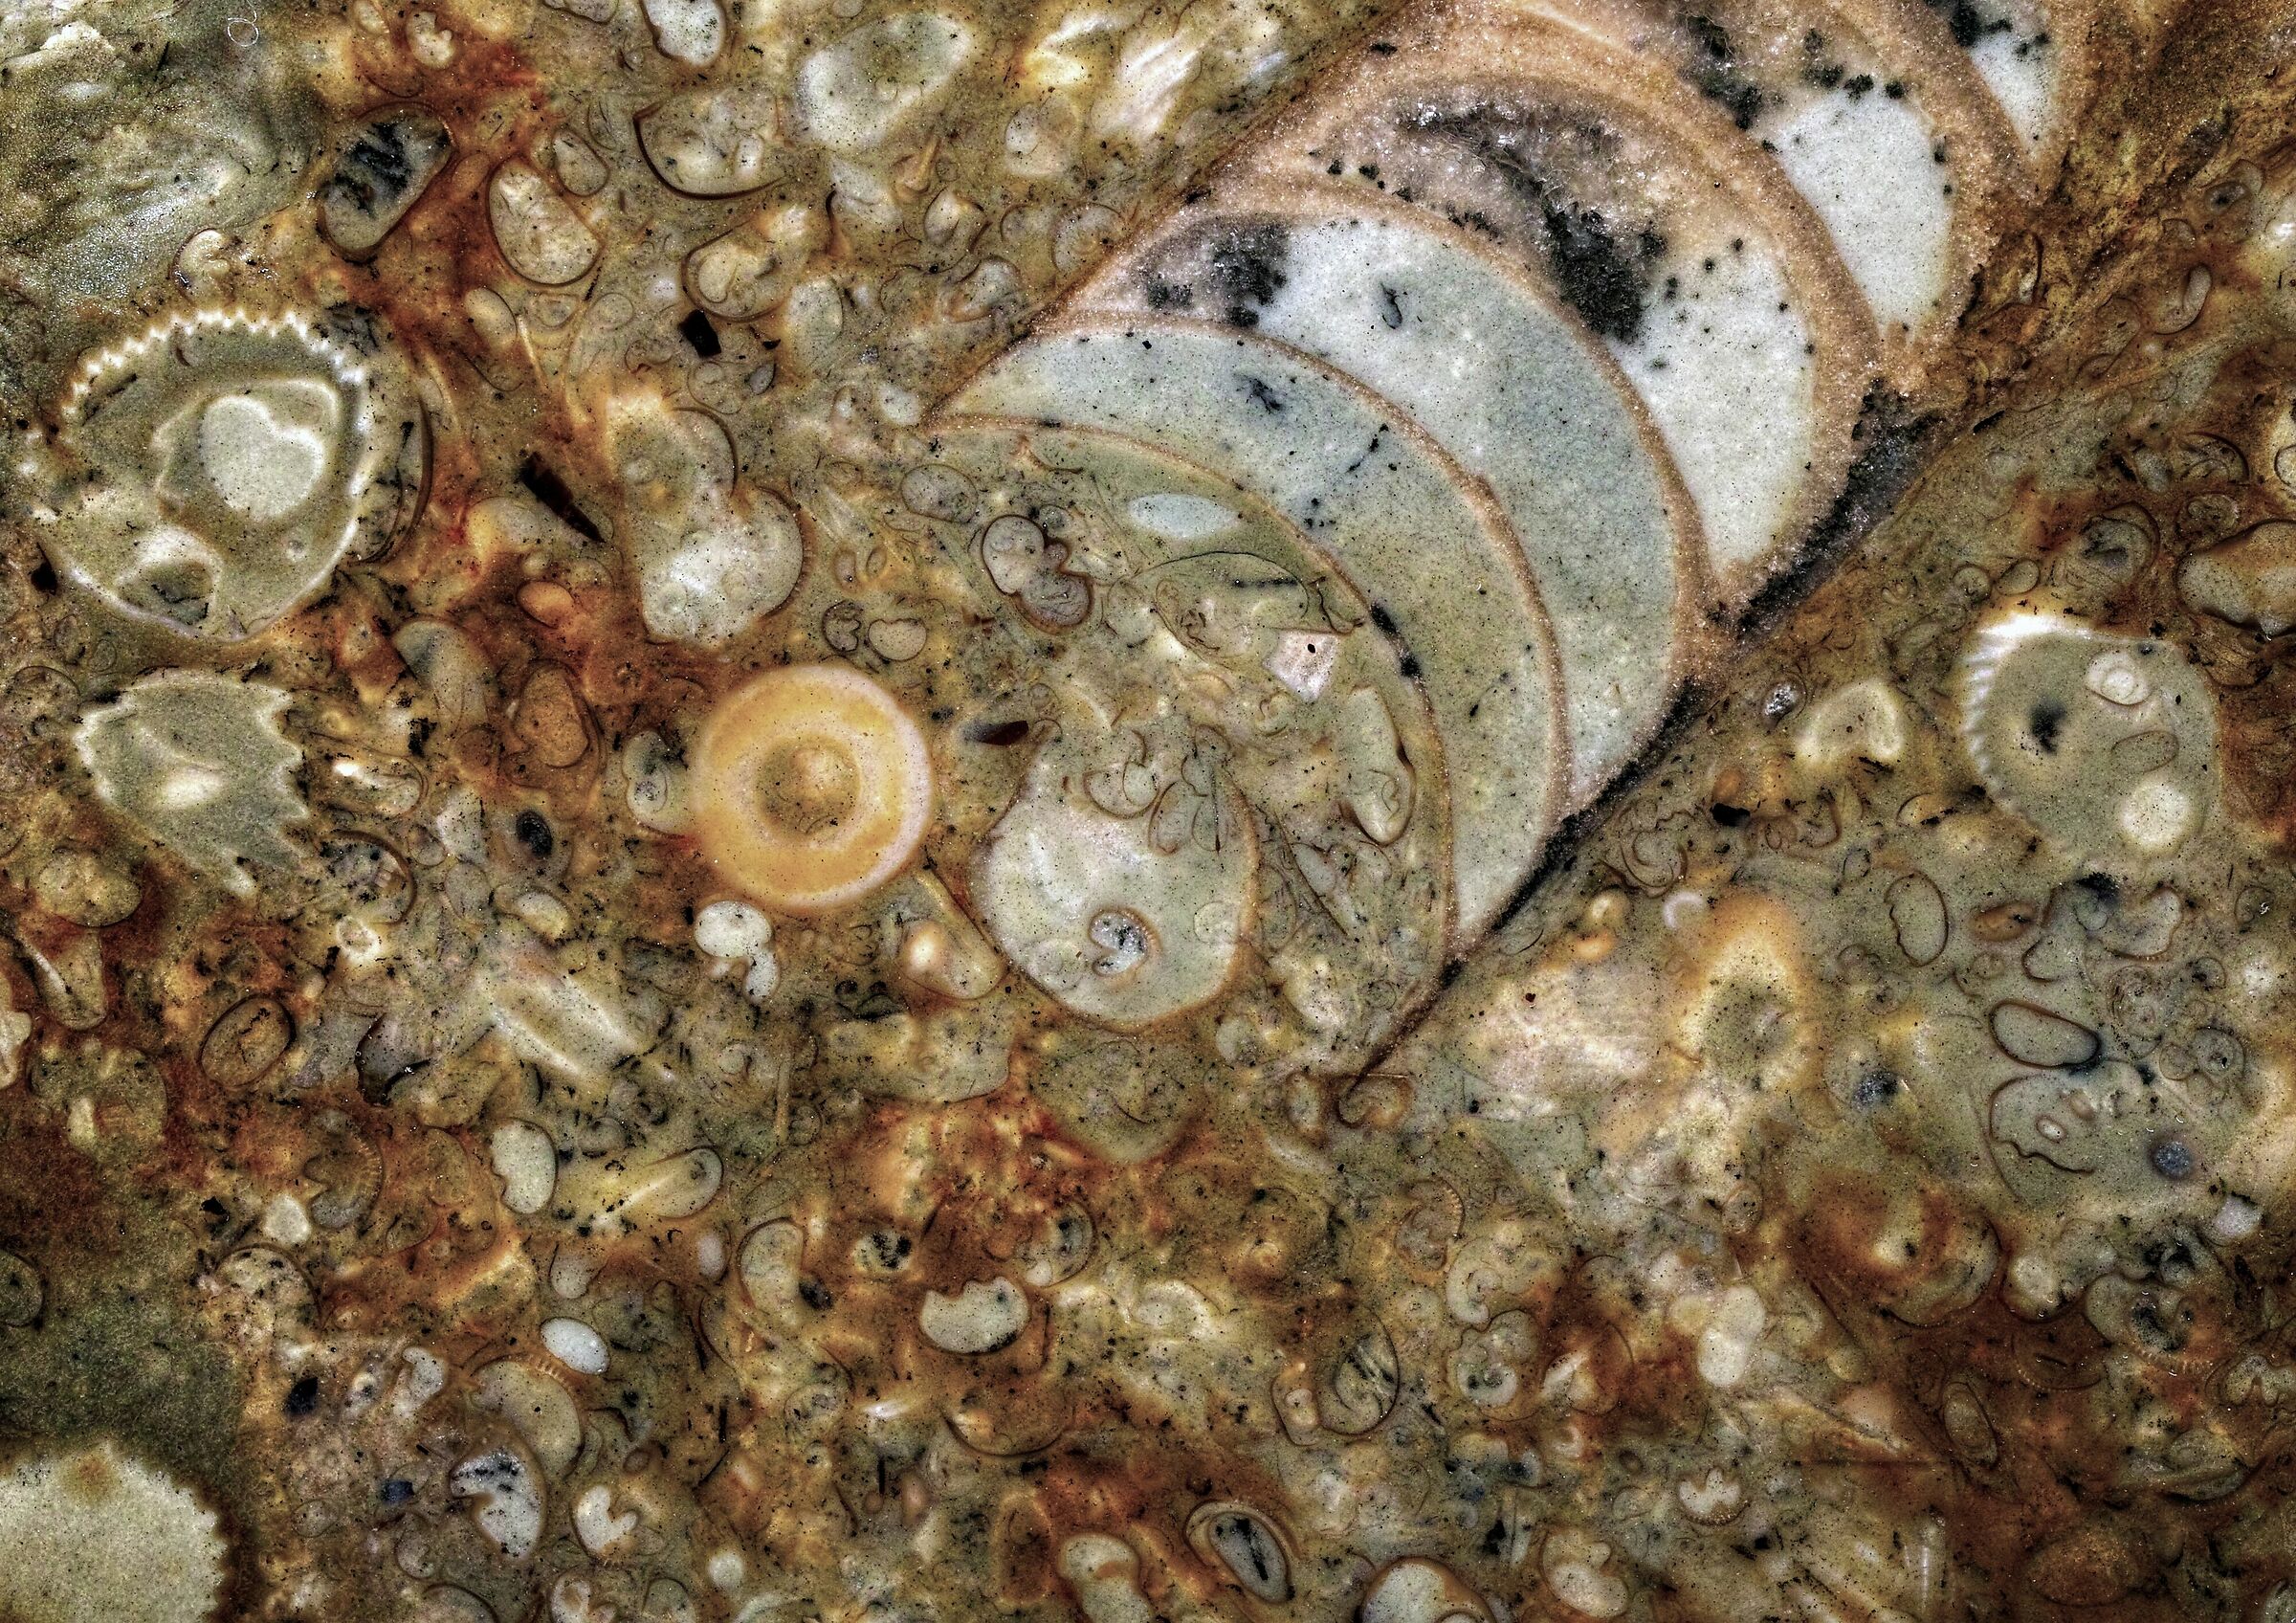 Fossili in pietra calcarea del Mar Baltico...